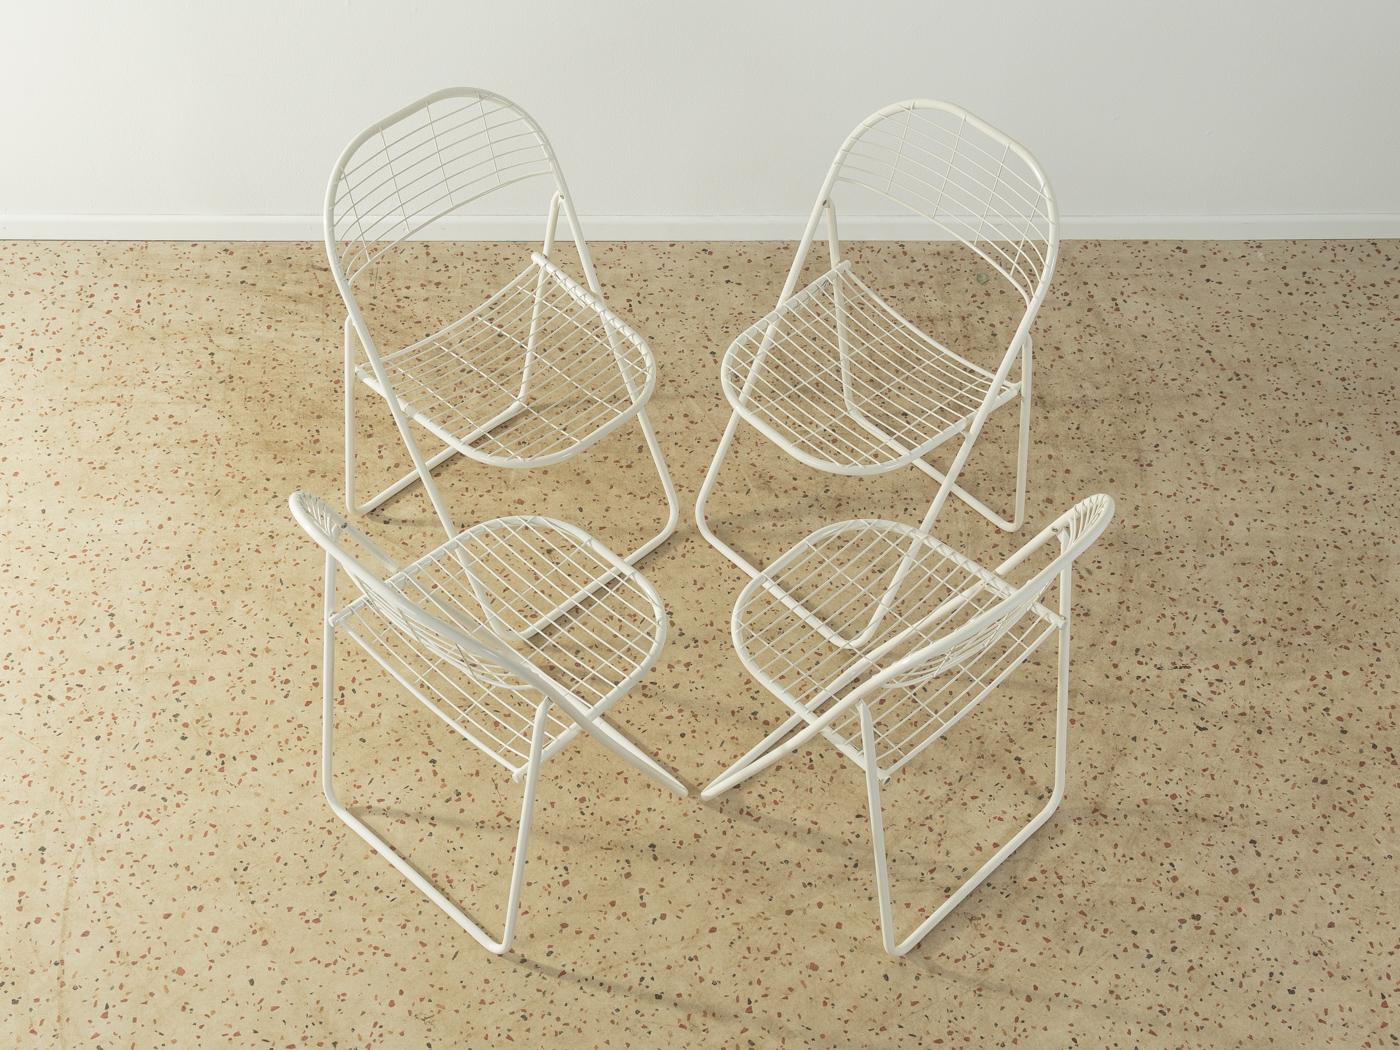 Åland-Klappstühle aus Metall von Niels Gammelgaard für Ikea aus den 1970er Jahren in Weiß. Das Angebot umfasst 4 Stühle.

Qualitätsmerkmale:
 gute Verarbeitung
 hochwertige MATERIALIEN
 Hergestellt in Schweden. Design: Niels Gammelgaard,